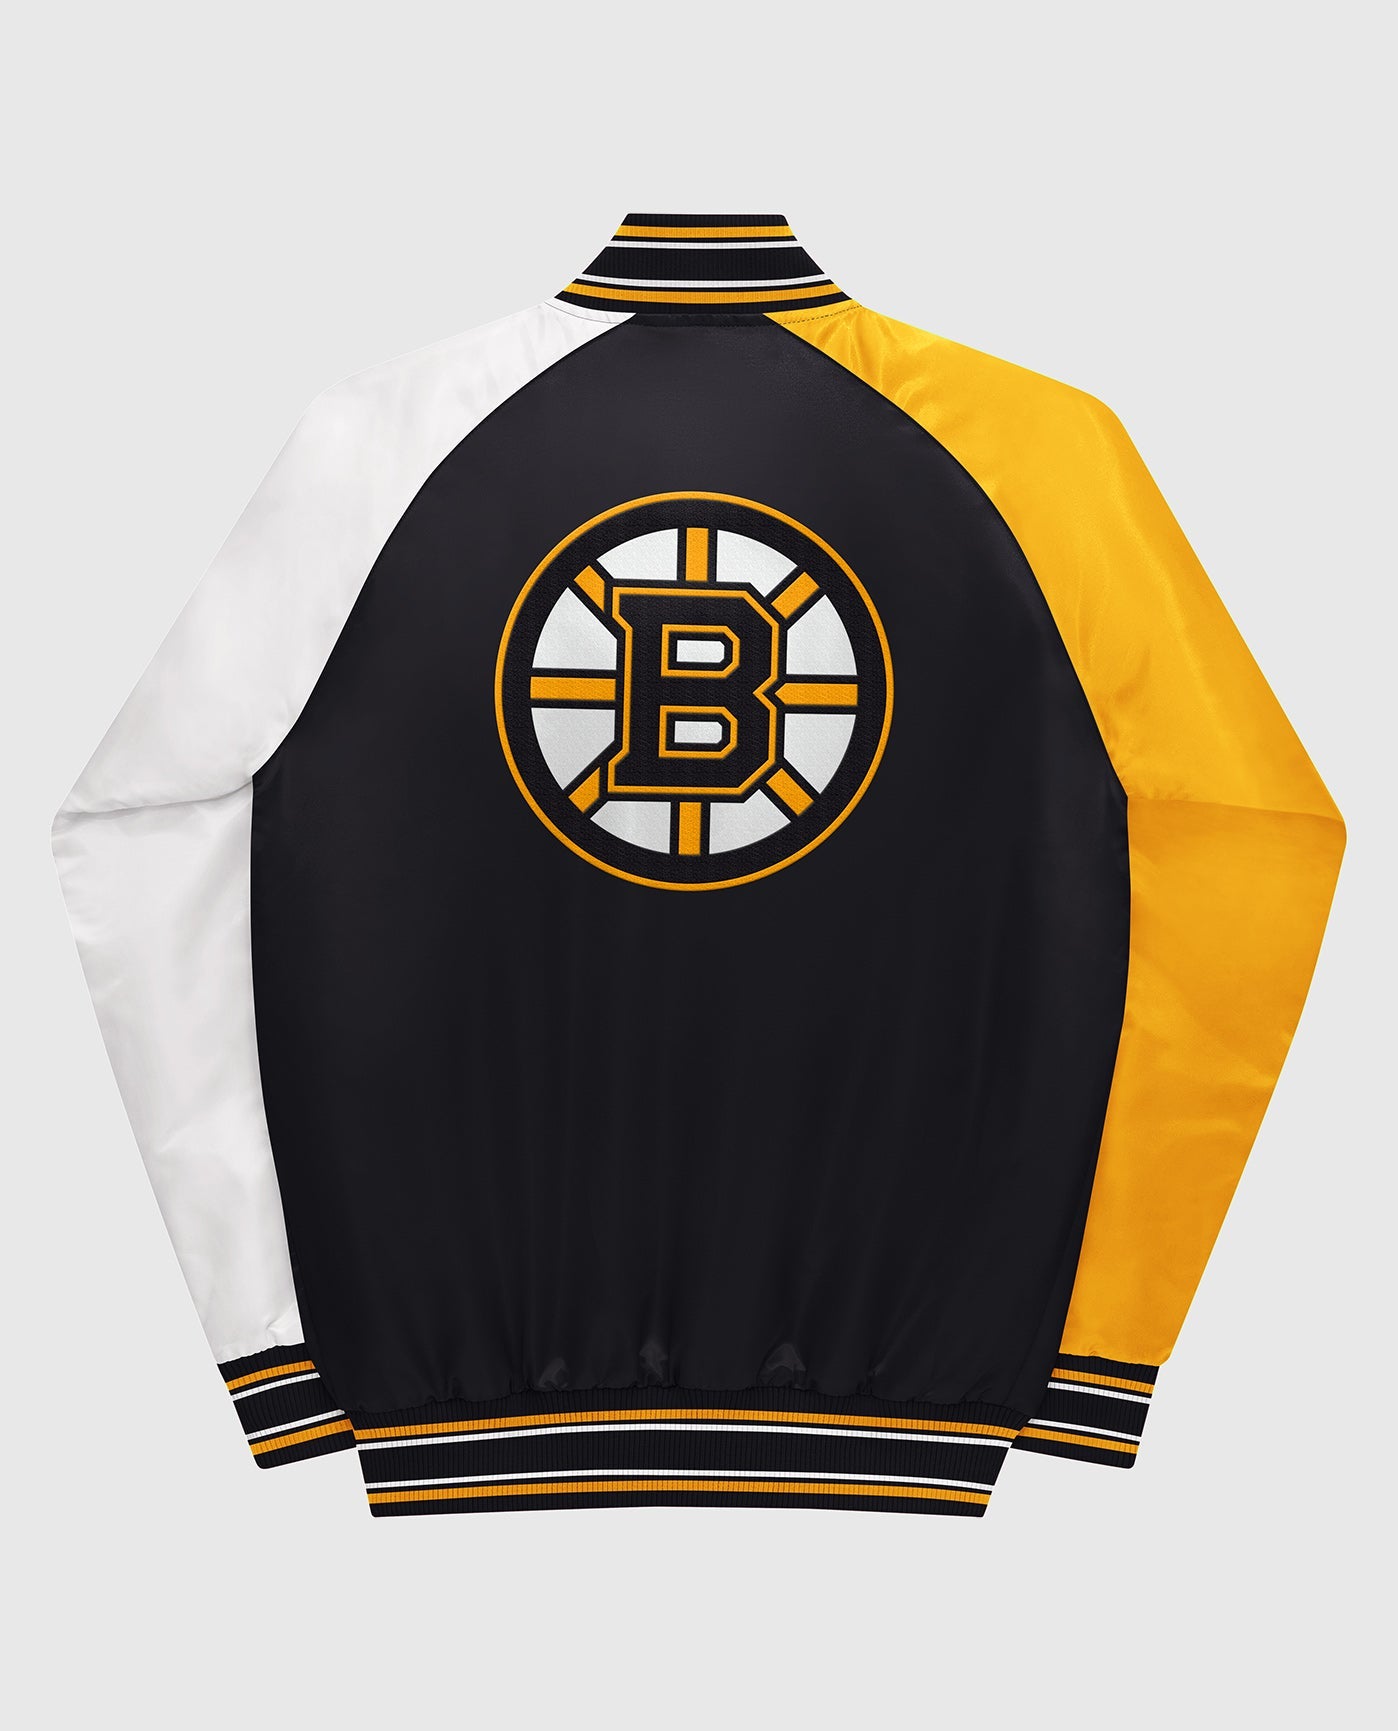 Vintage Starter NHL Boston Bruins Jersey Size Youth M.